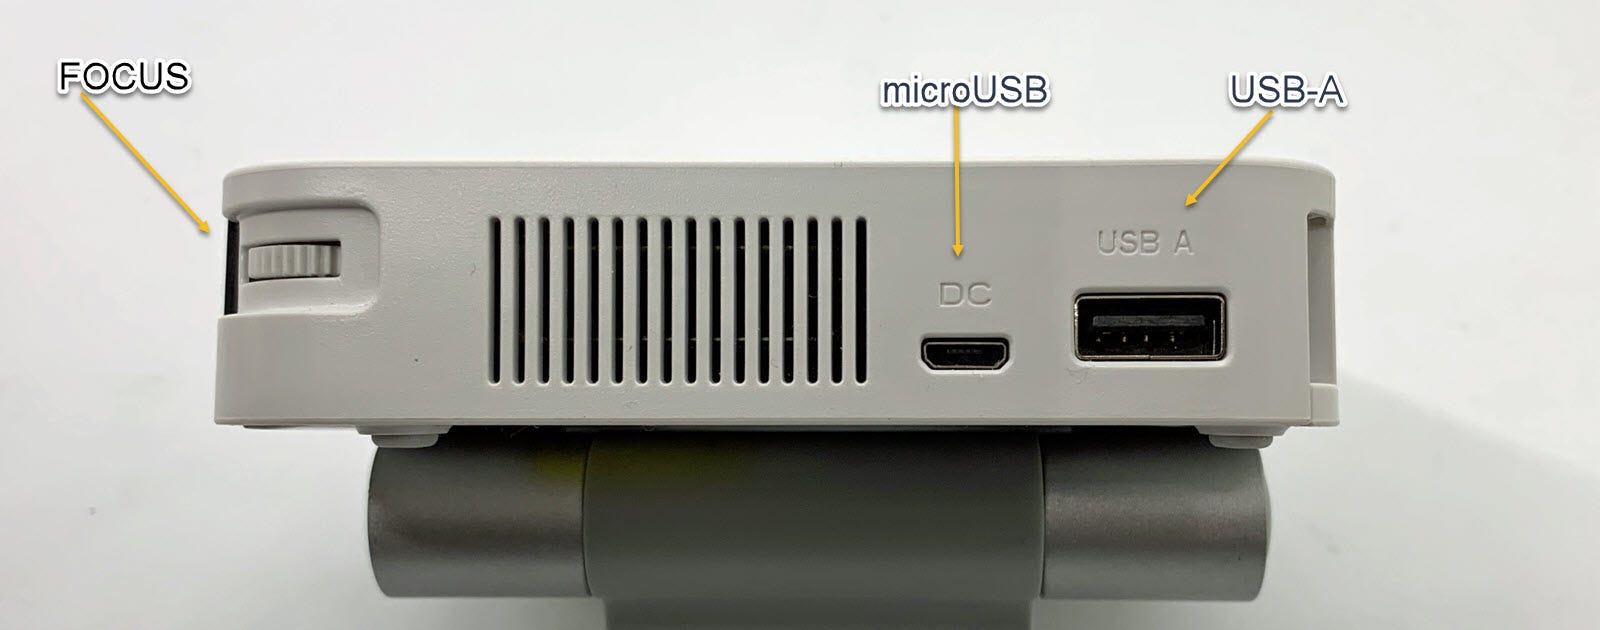 Hình ảnh hiển thị các cổng USB